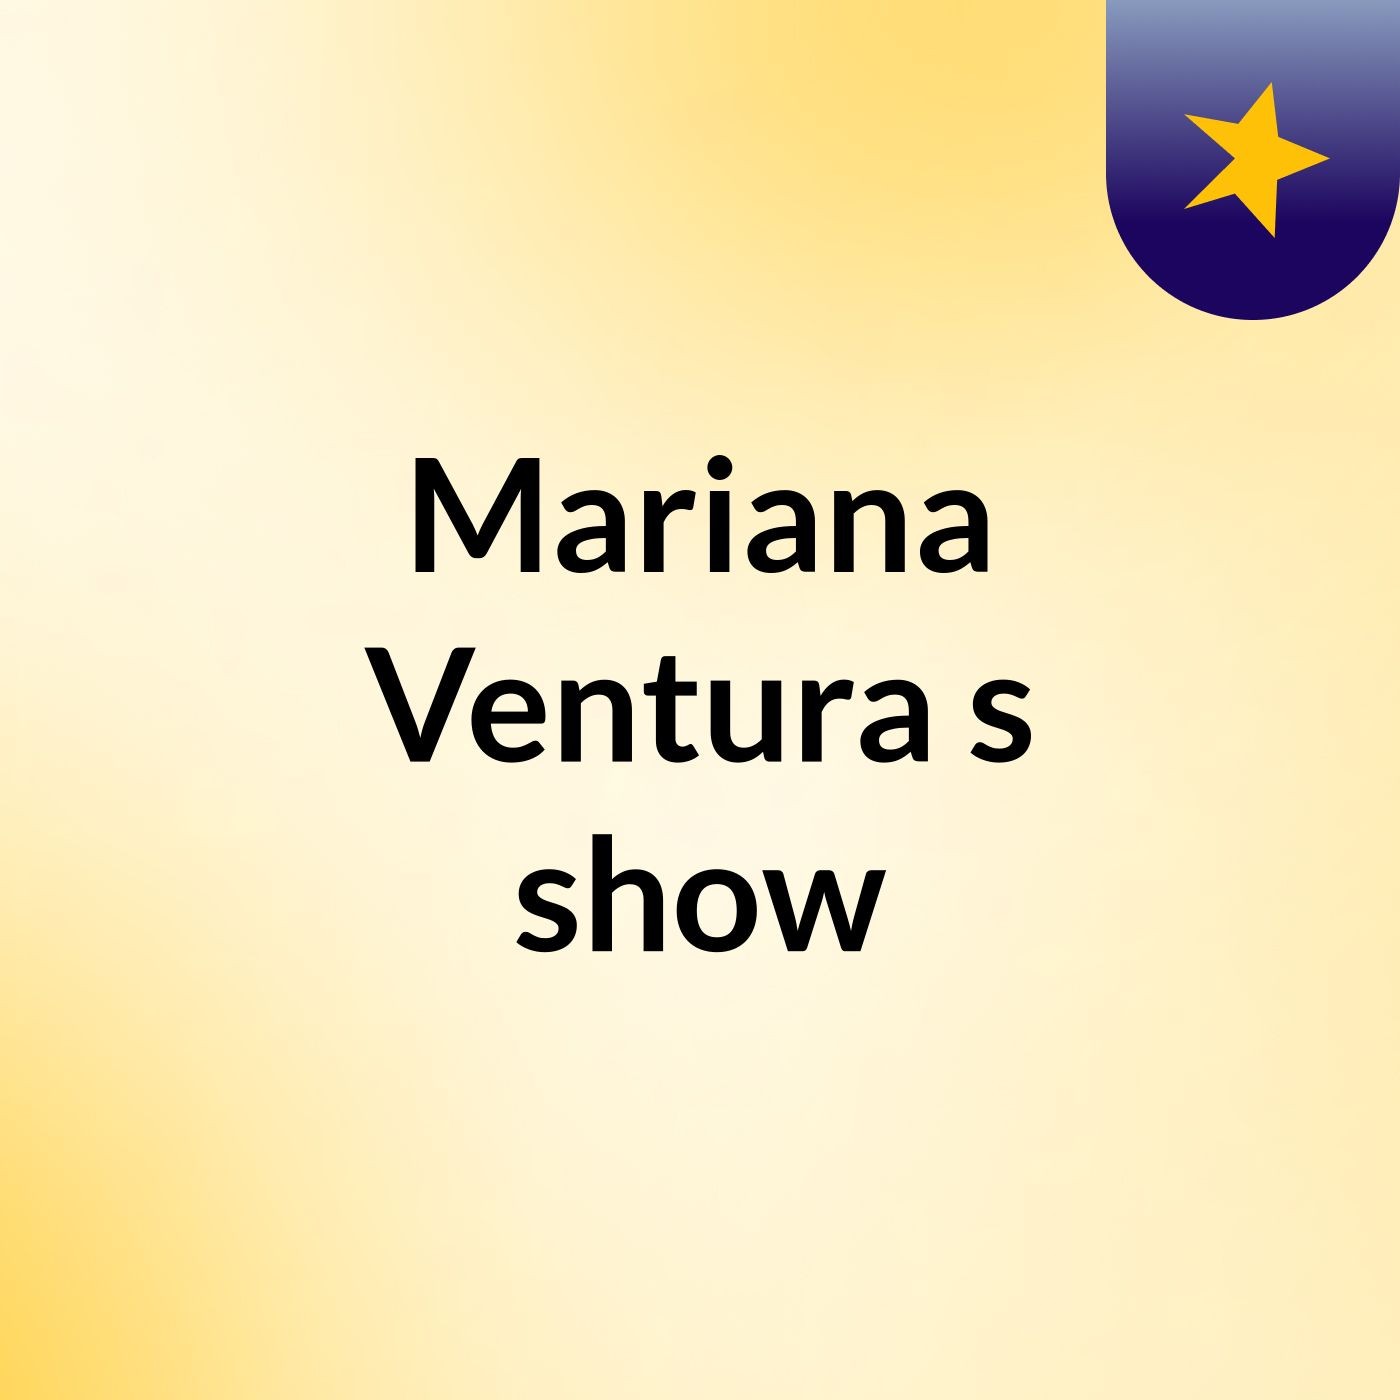 Mariana Ventura's show